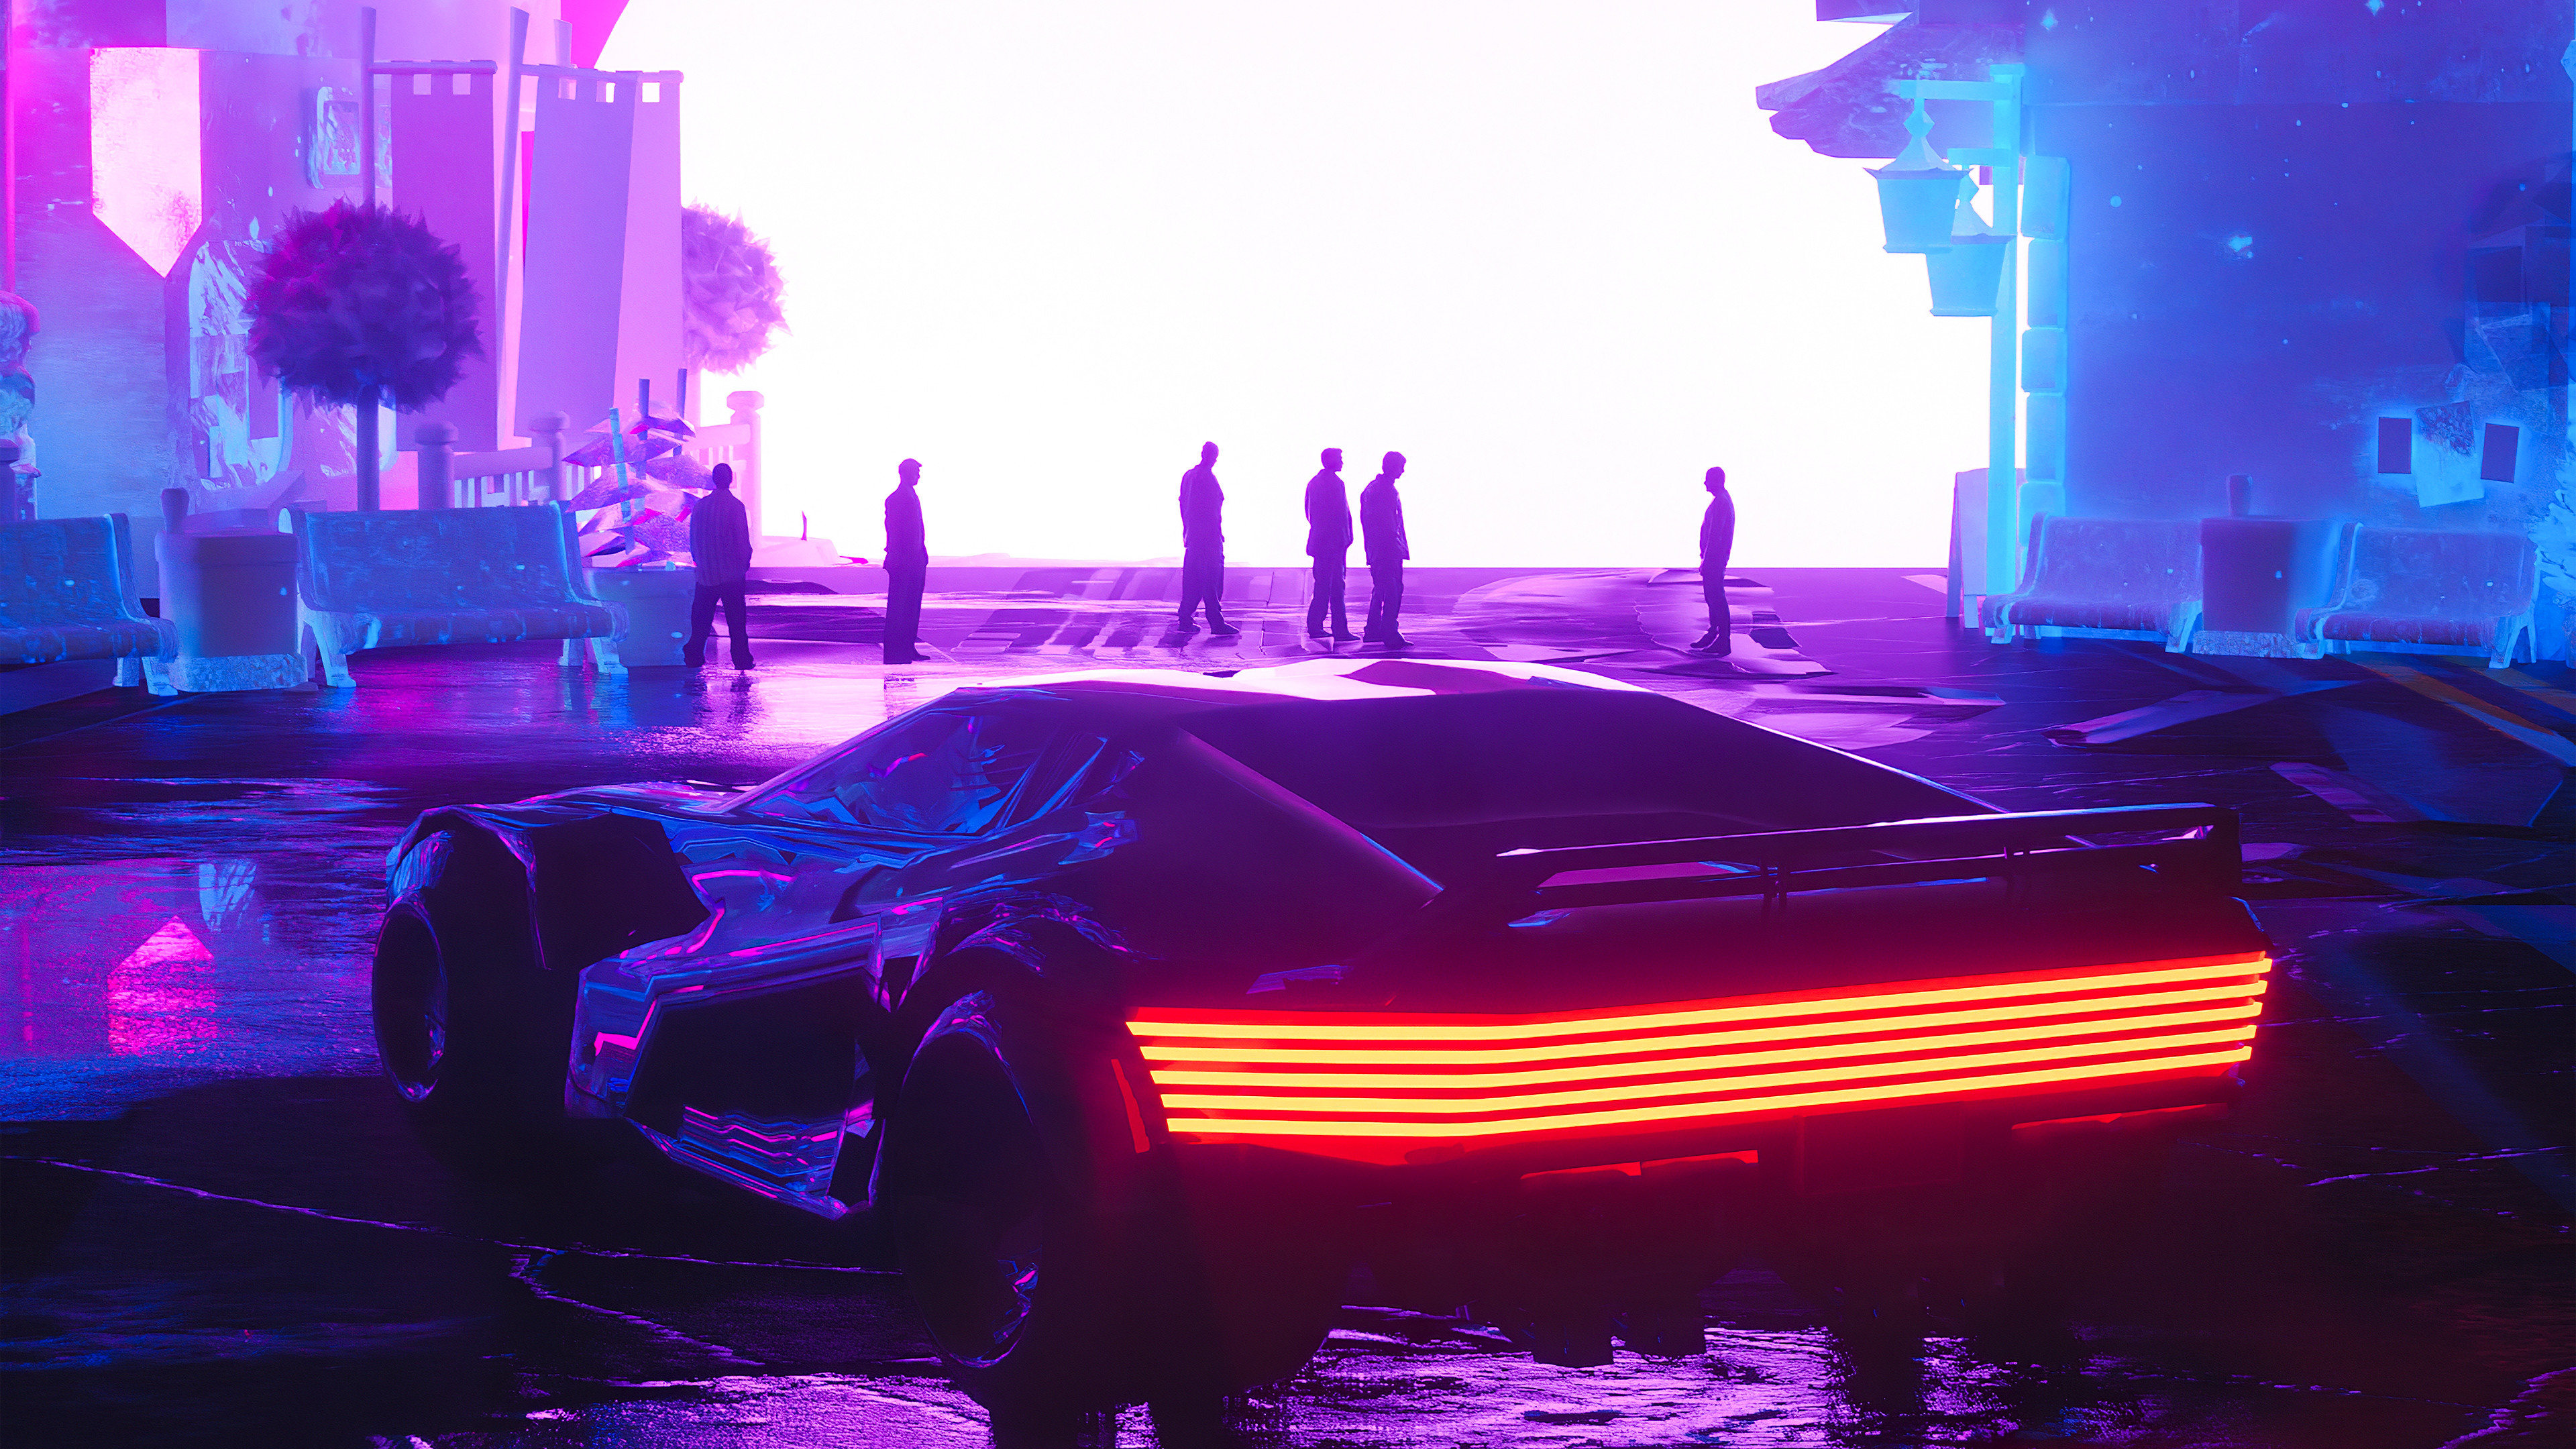 Cyberpunk 2077 #synthwave #car digital art #vehicle futuristic city #1080P # wallpaper #hdwallpaper #desktop